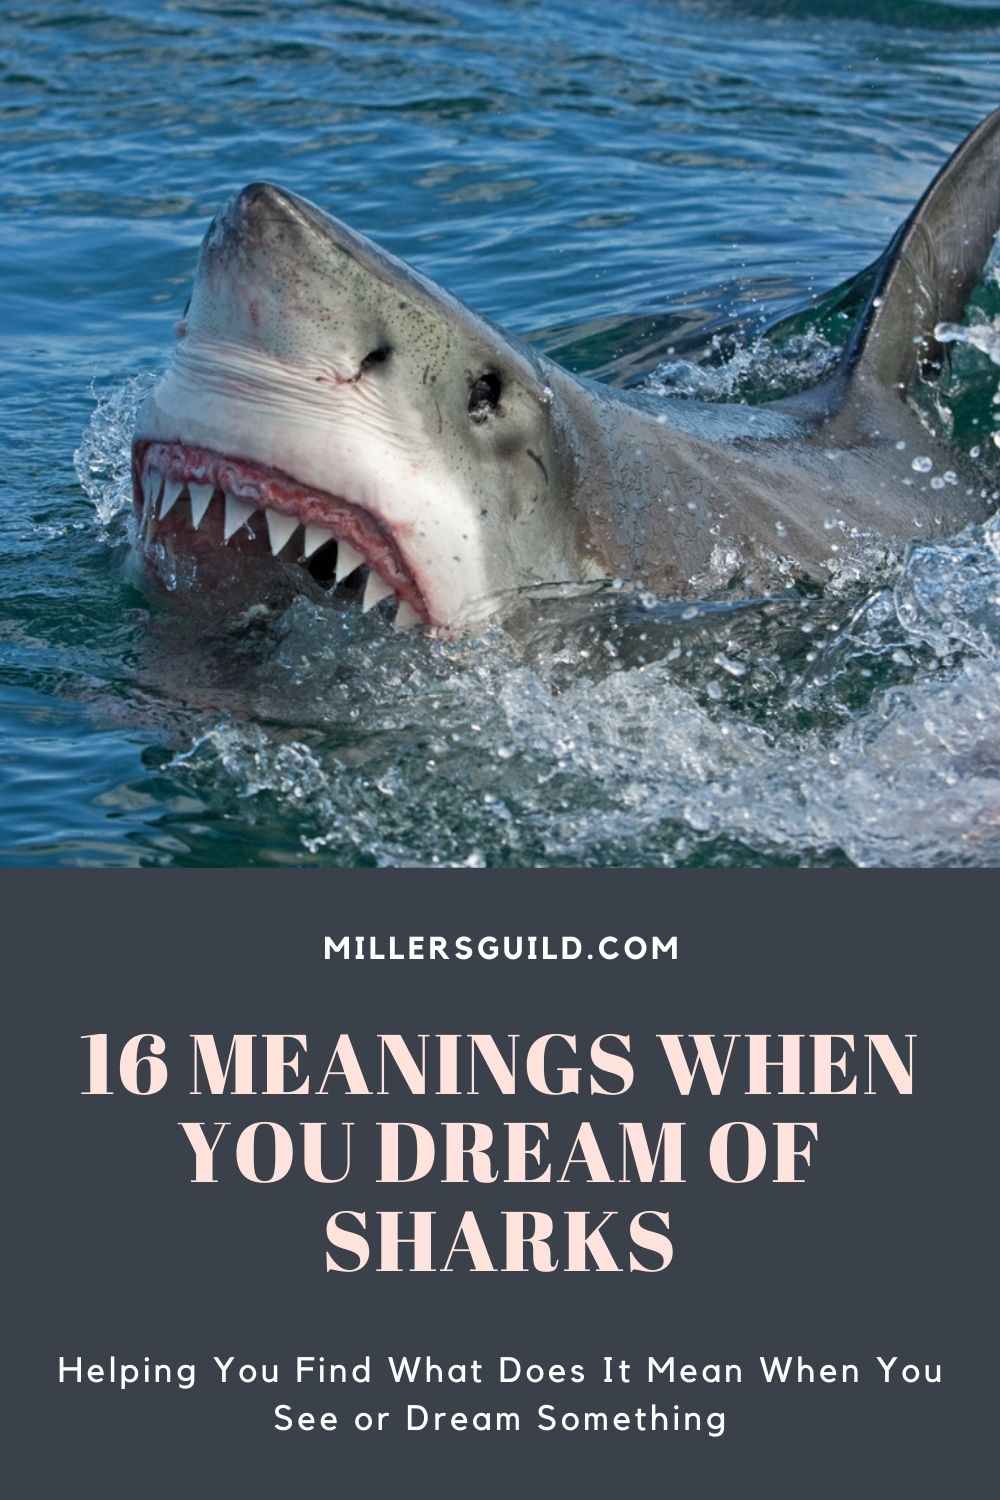  Drøm om hajer, der angriber andre (heldig fortolkning)